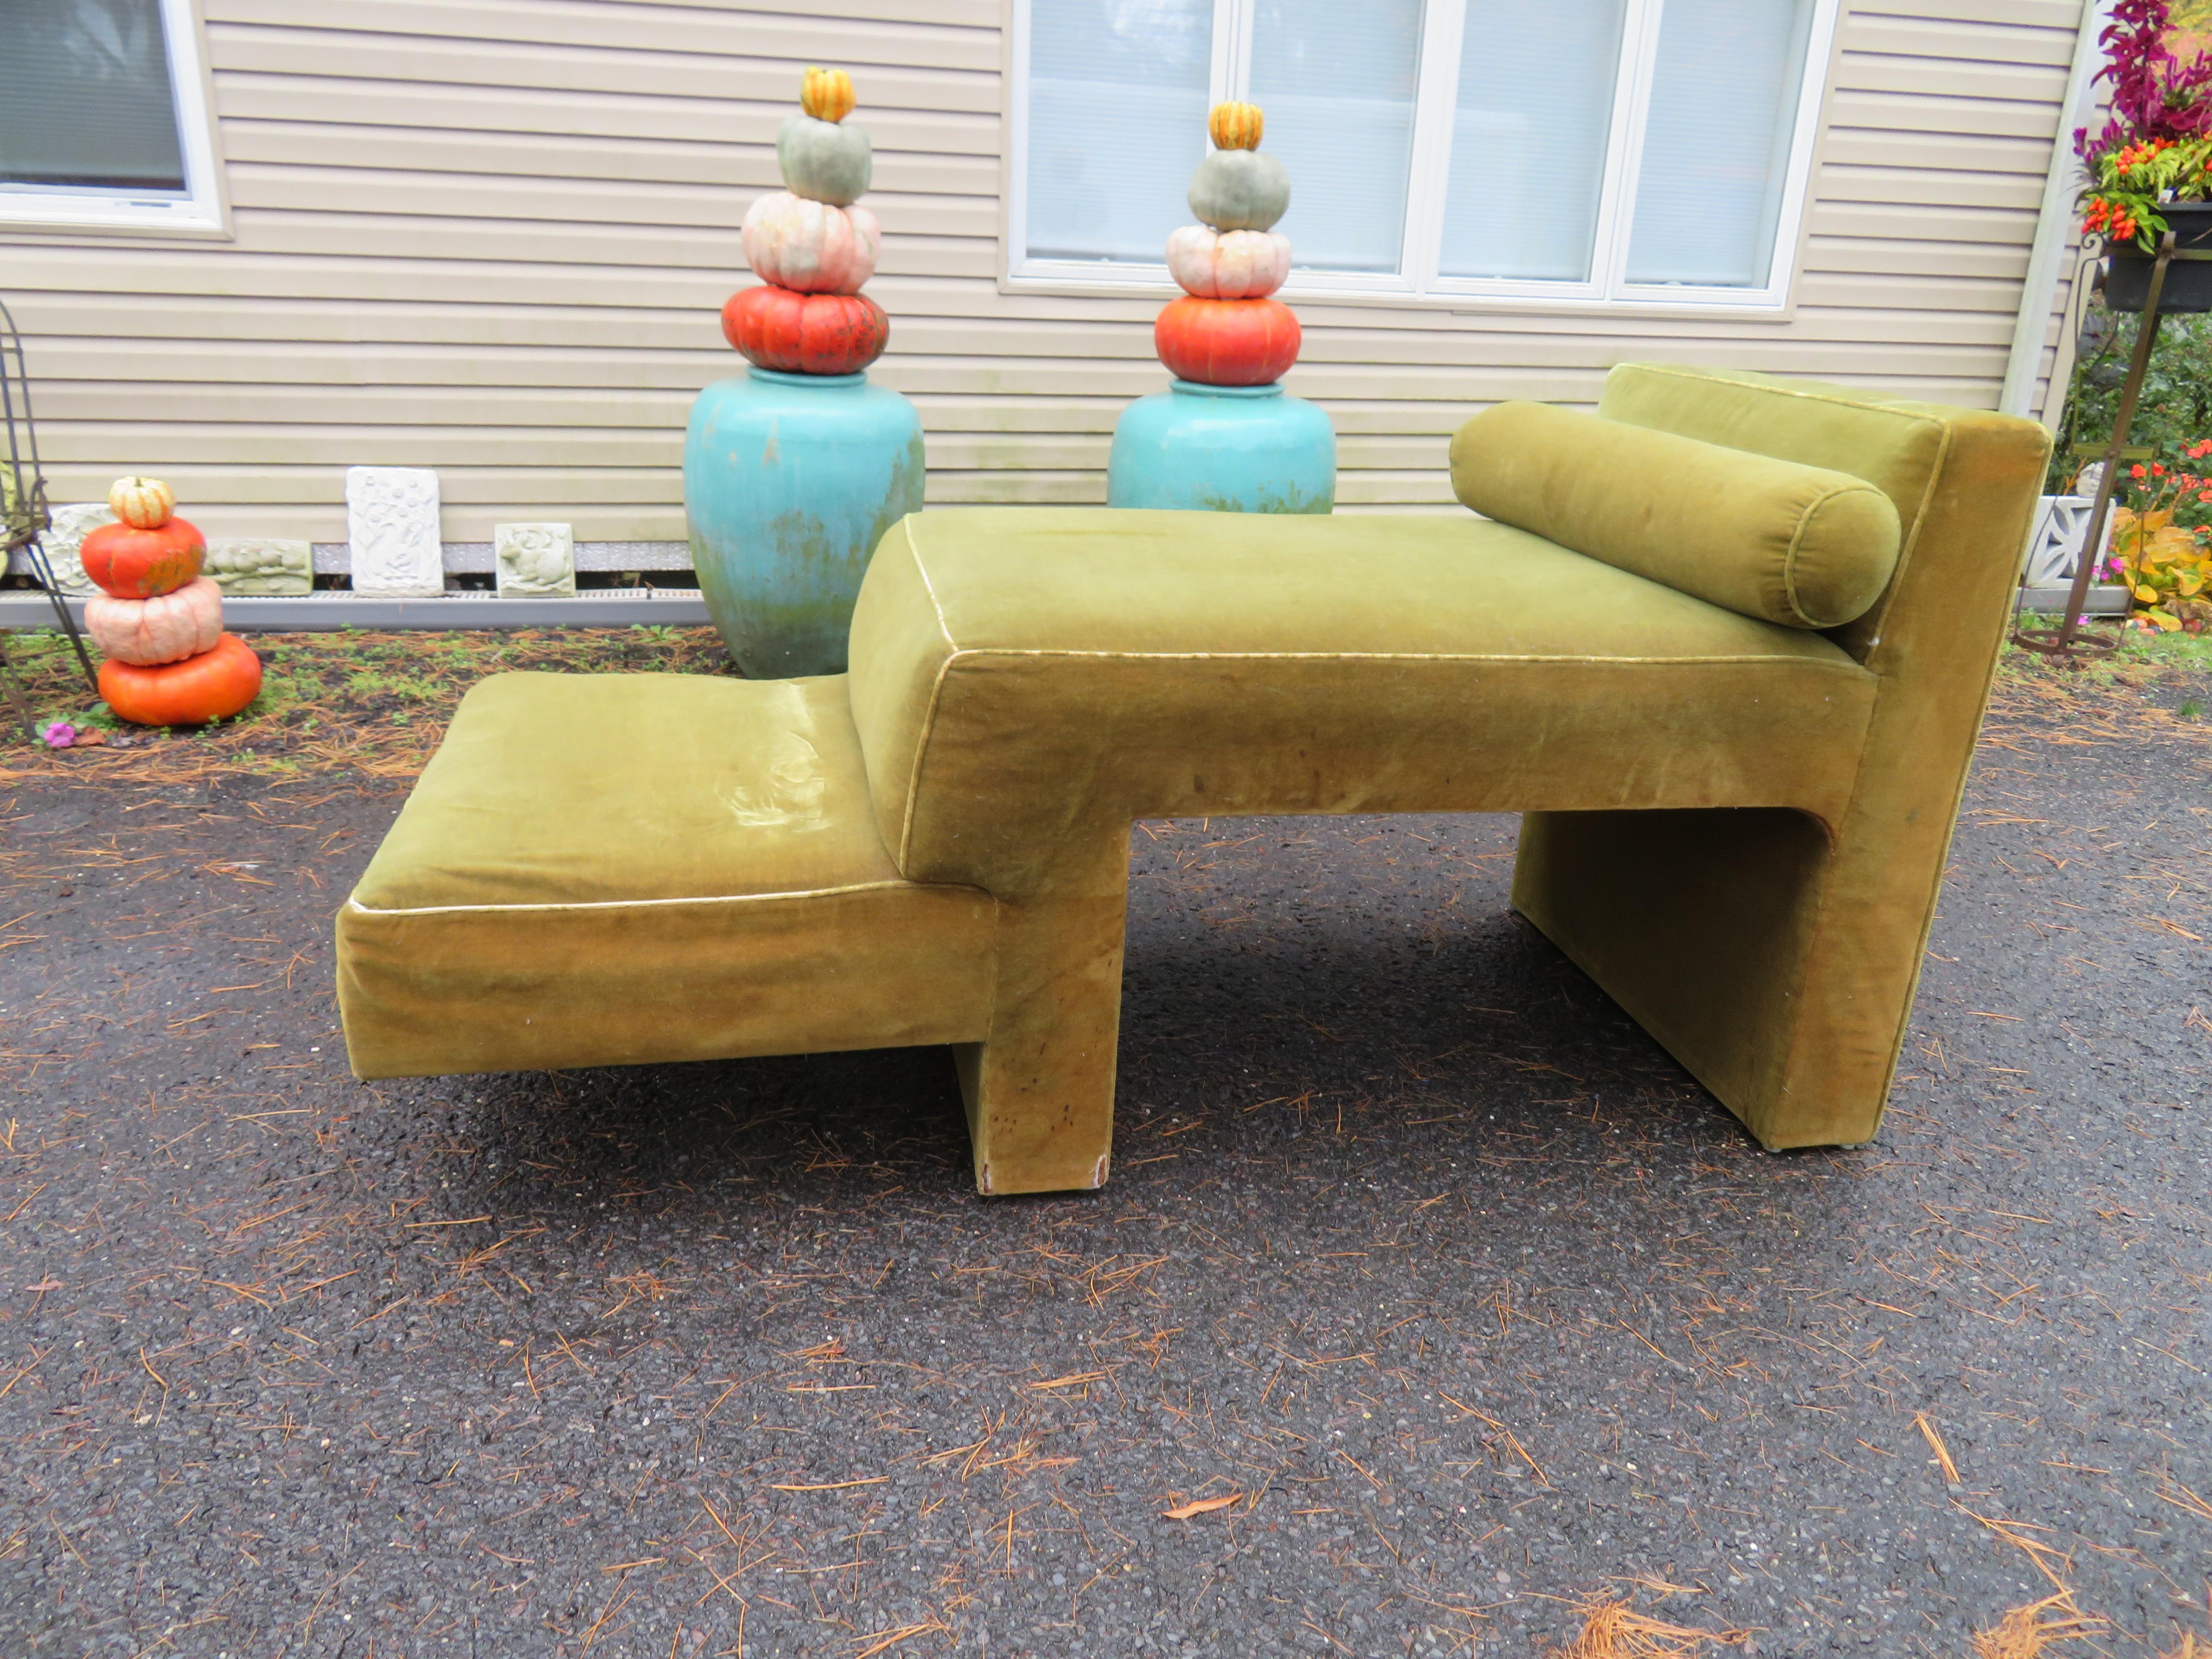 Seltenes Vladimir Kagan Omnibus 2-tier chaise lounge sofa. Diese Stücke kommen nur selten auf den Markt und würden jede vorhandene Omnibus-Sitzgruppe ergänzen. Wir haben mehrere Kagan Omnibus Sofa-Sectionals zum Verkauf auf 1stdibs, dass dieses